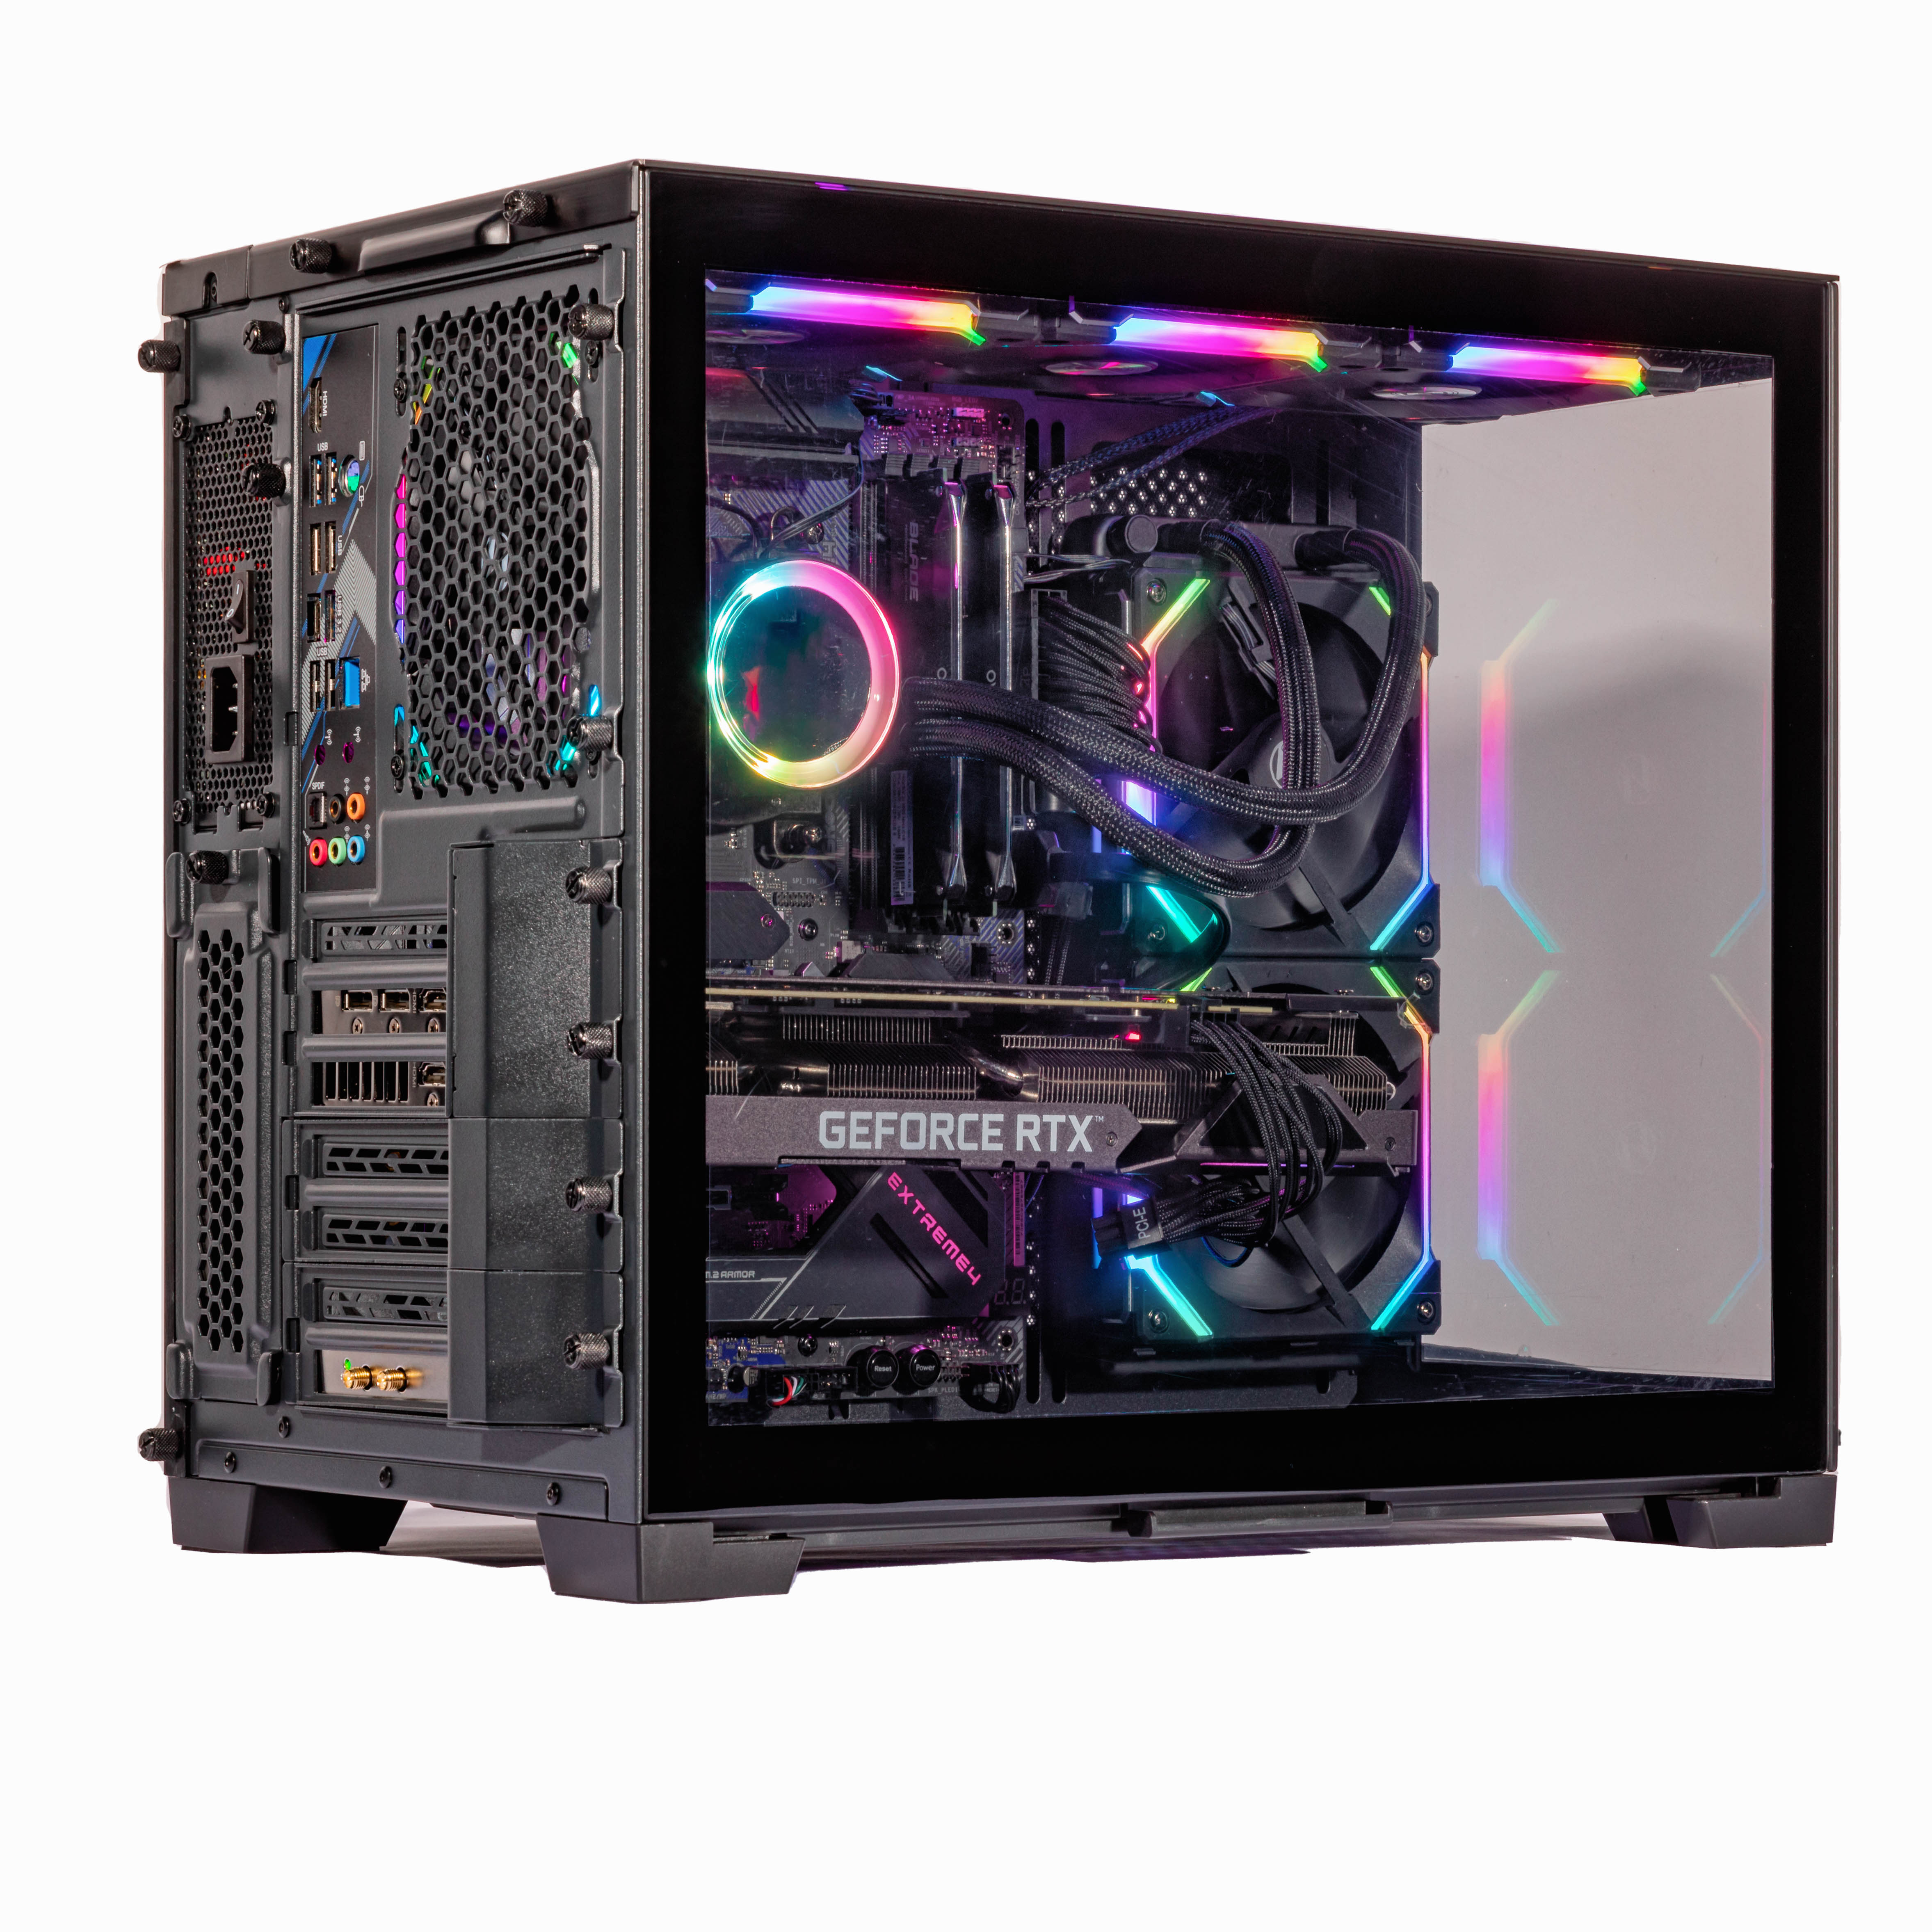 Velztorm Galax Desktop PC (AMD Ryzen 7 - 5800X, 16GB DDR4, 512GB m.2 SATA SSD + 2TB HDD (3.5), Win 10 Home)